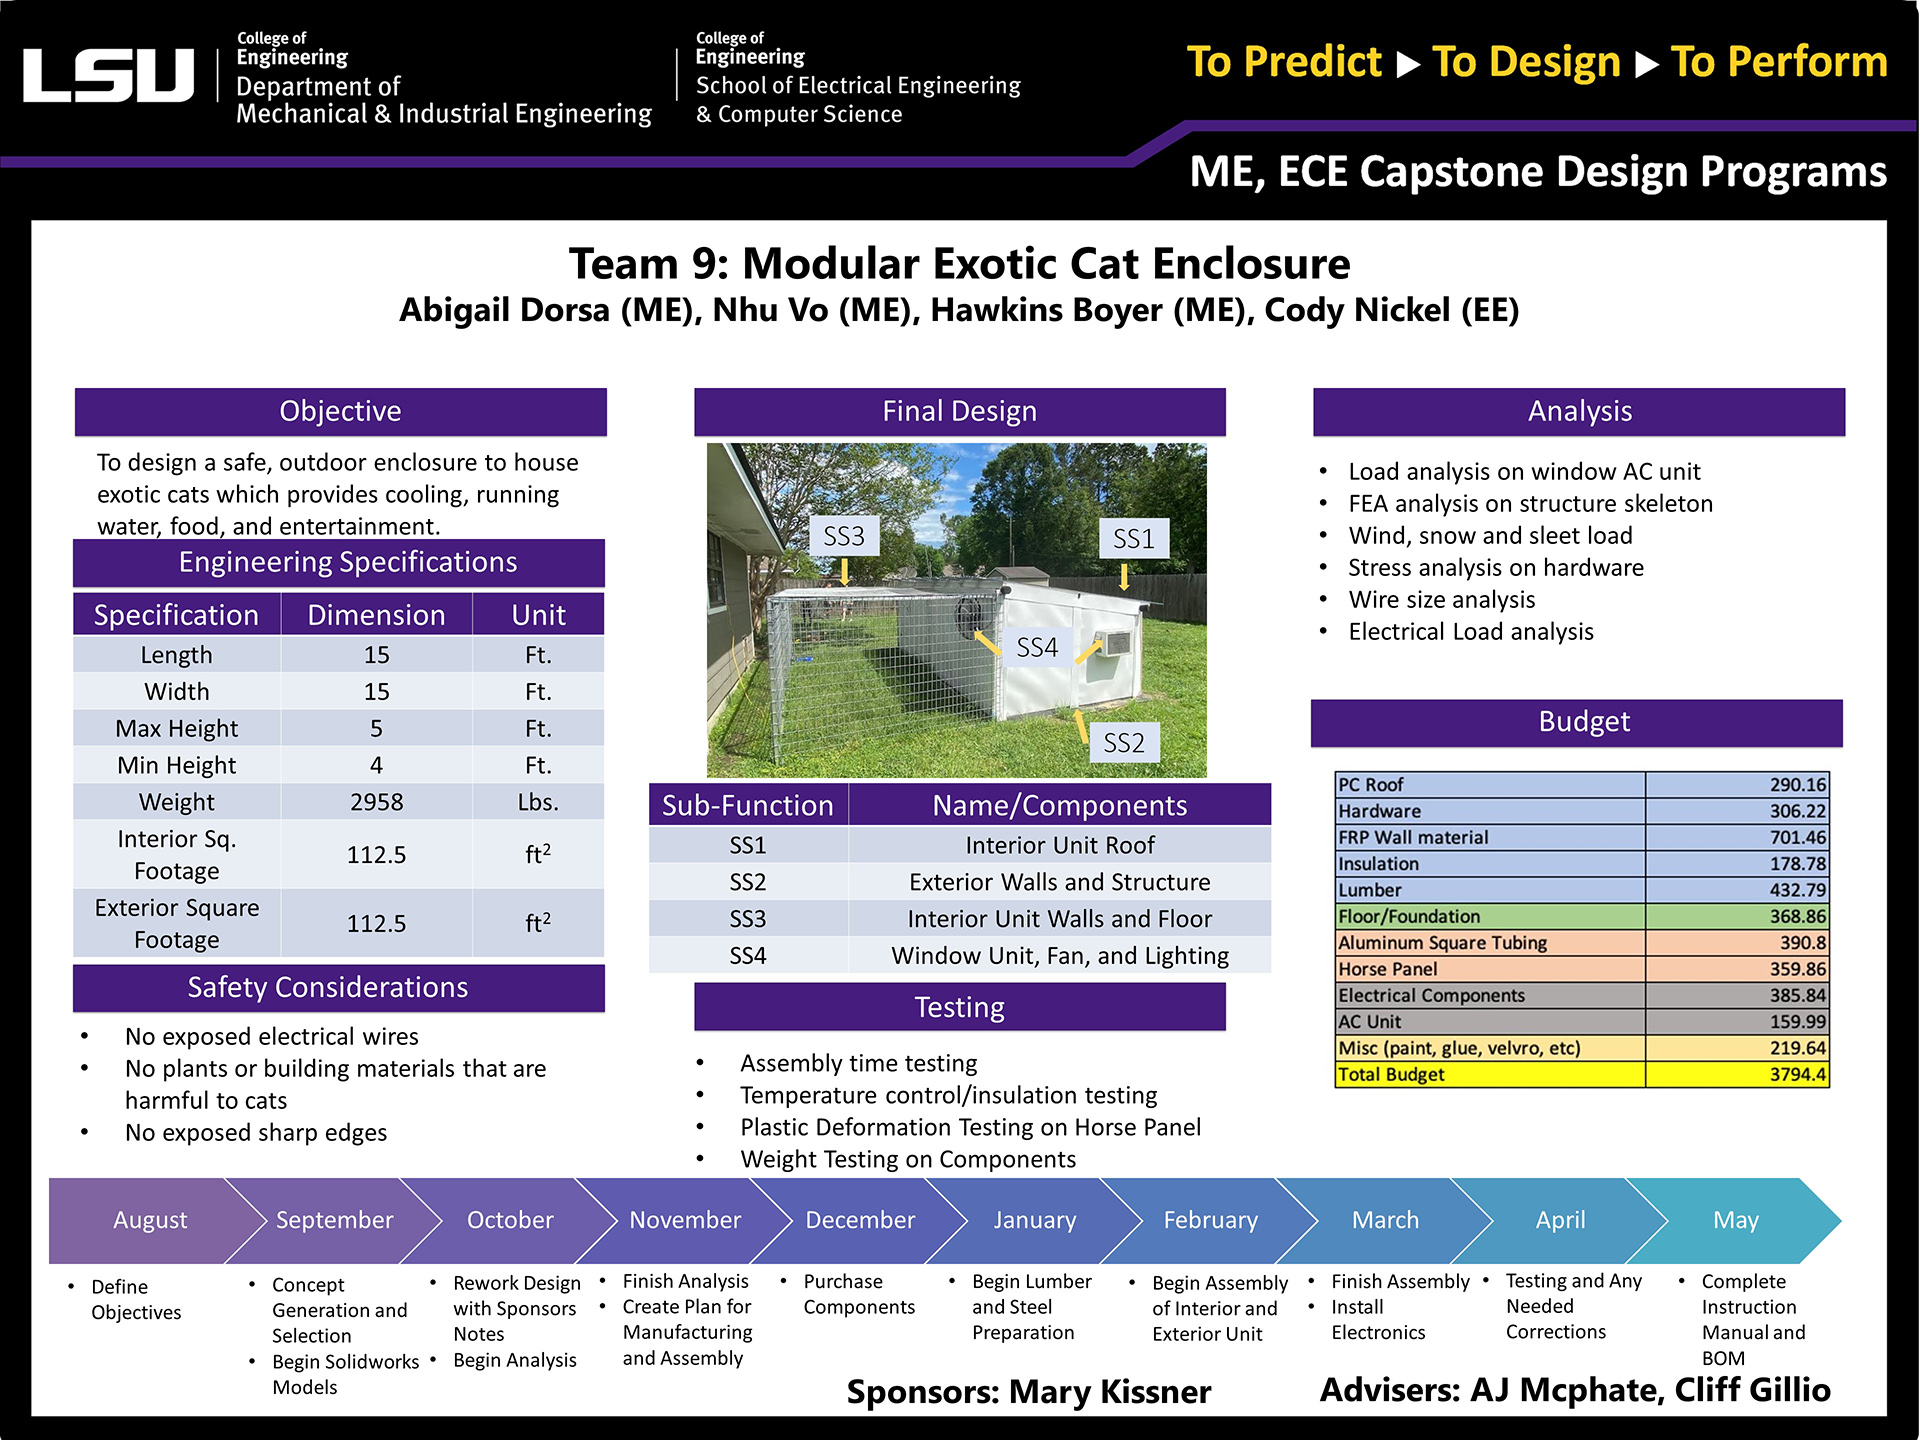 Project 9: Modular Exotic Cat Enclosure (2022)